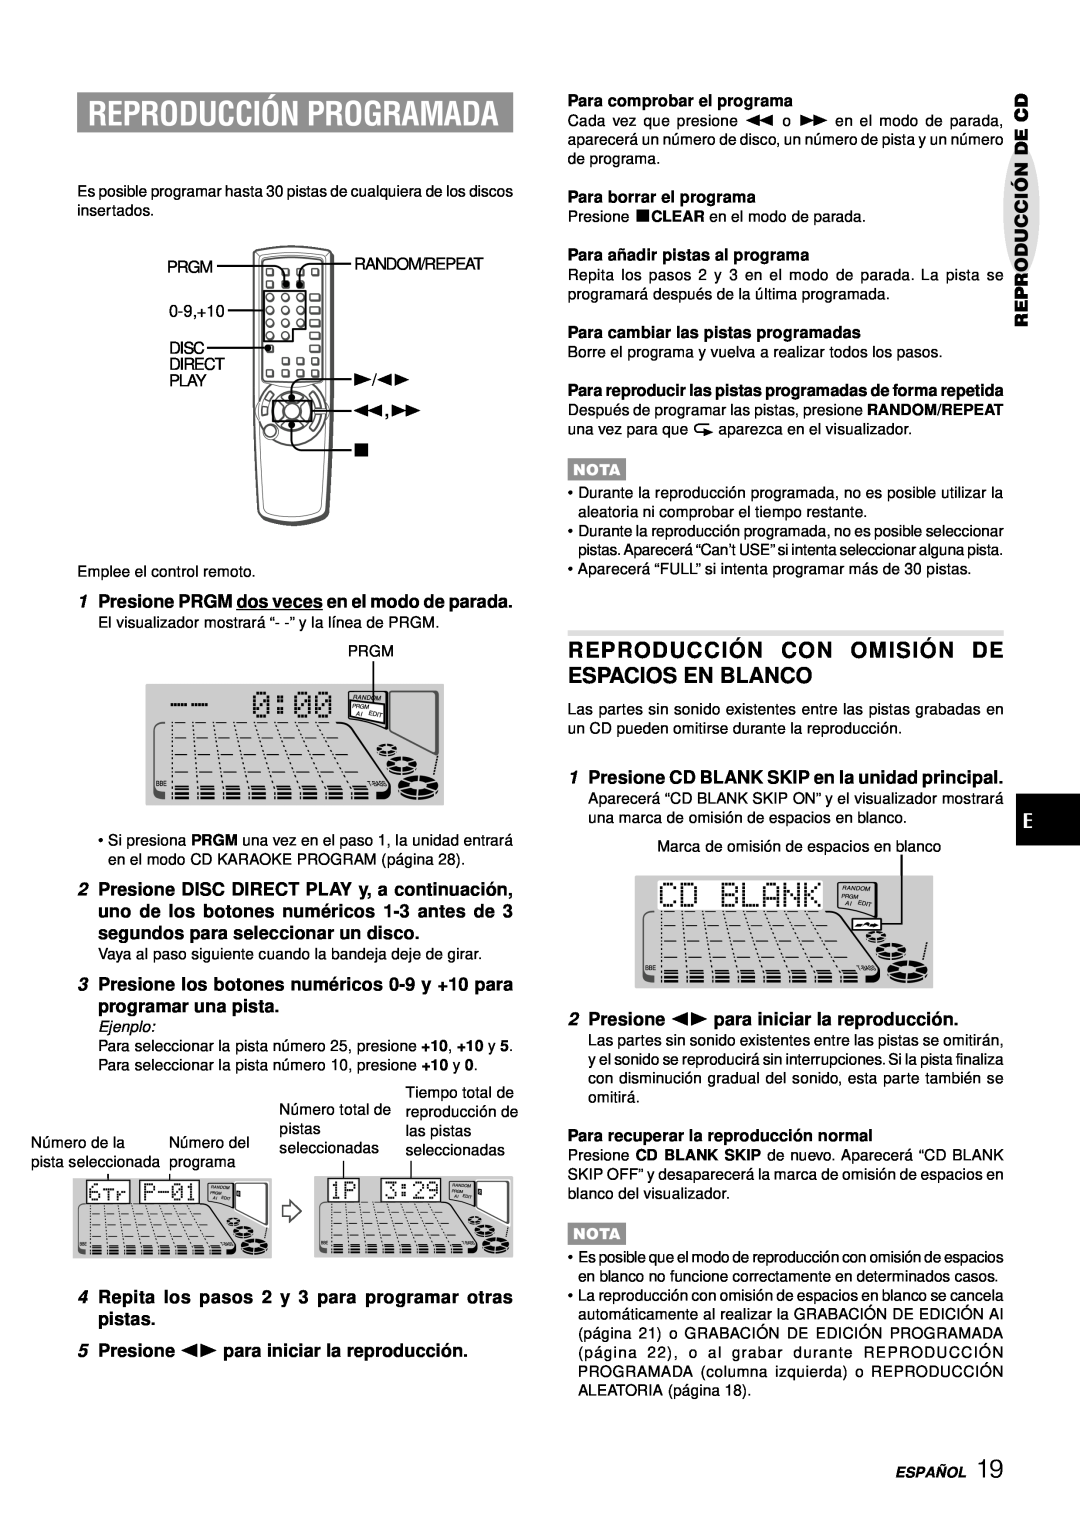 Aiwa XH-A1000 manual Reproducción Programada, Reproducció N Con Omisió N De Espacios En Blanco, programar una pista 